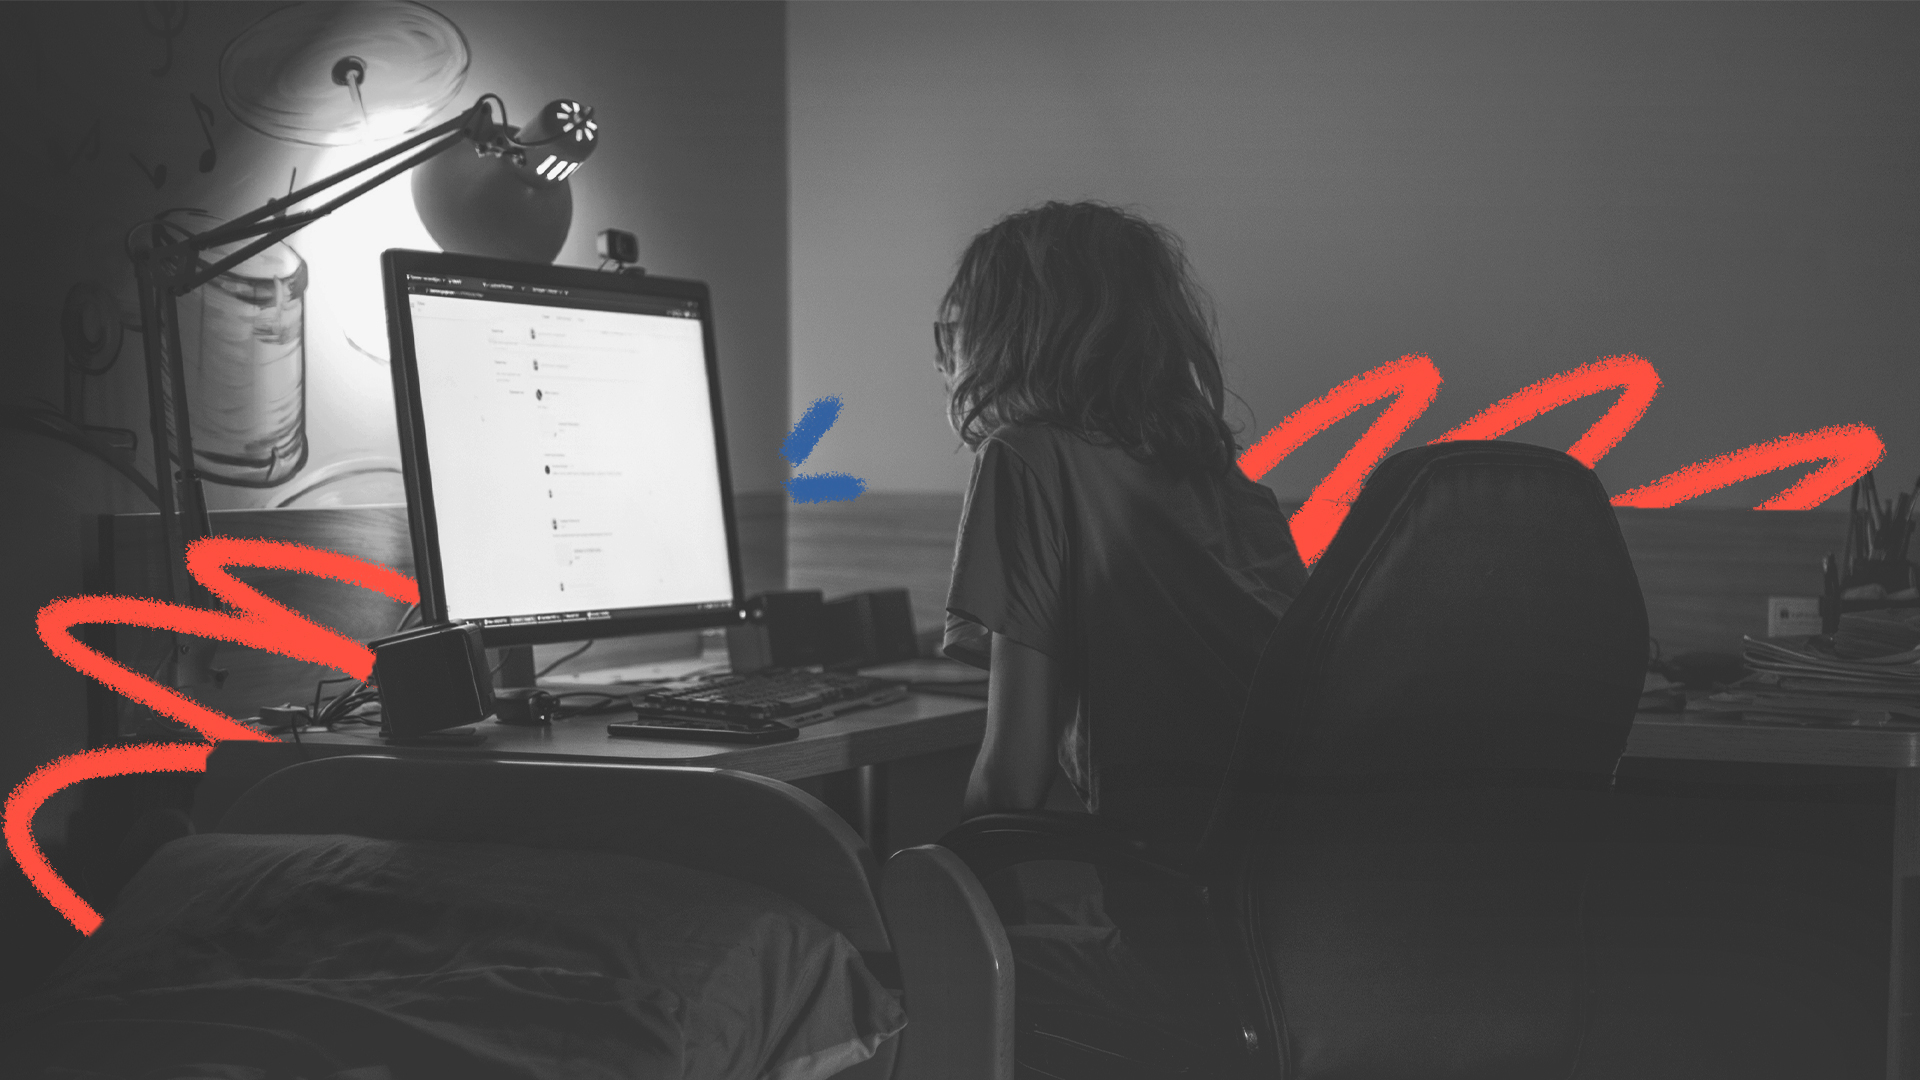 Imagem em preto e branco de um menino branco, de cabelos no ombro, que olha para a tela de um computador. A foto ilustra matéria sobre ataques em escolas.